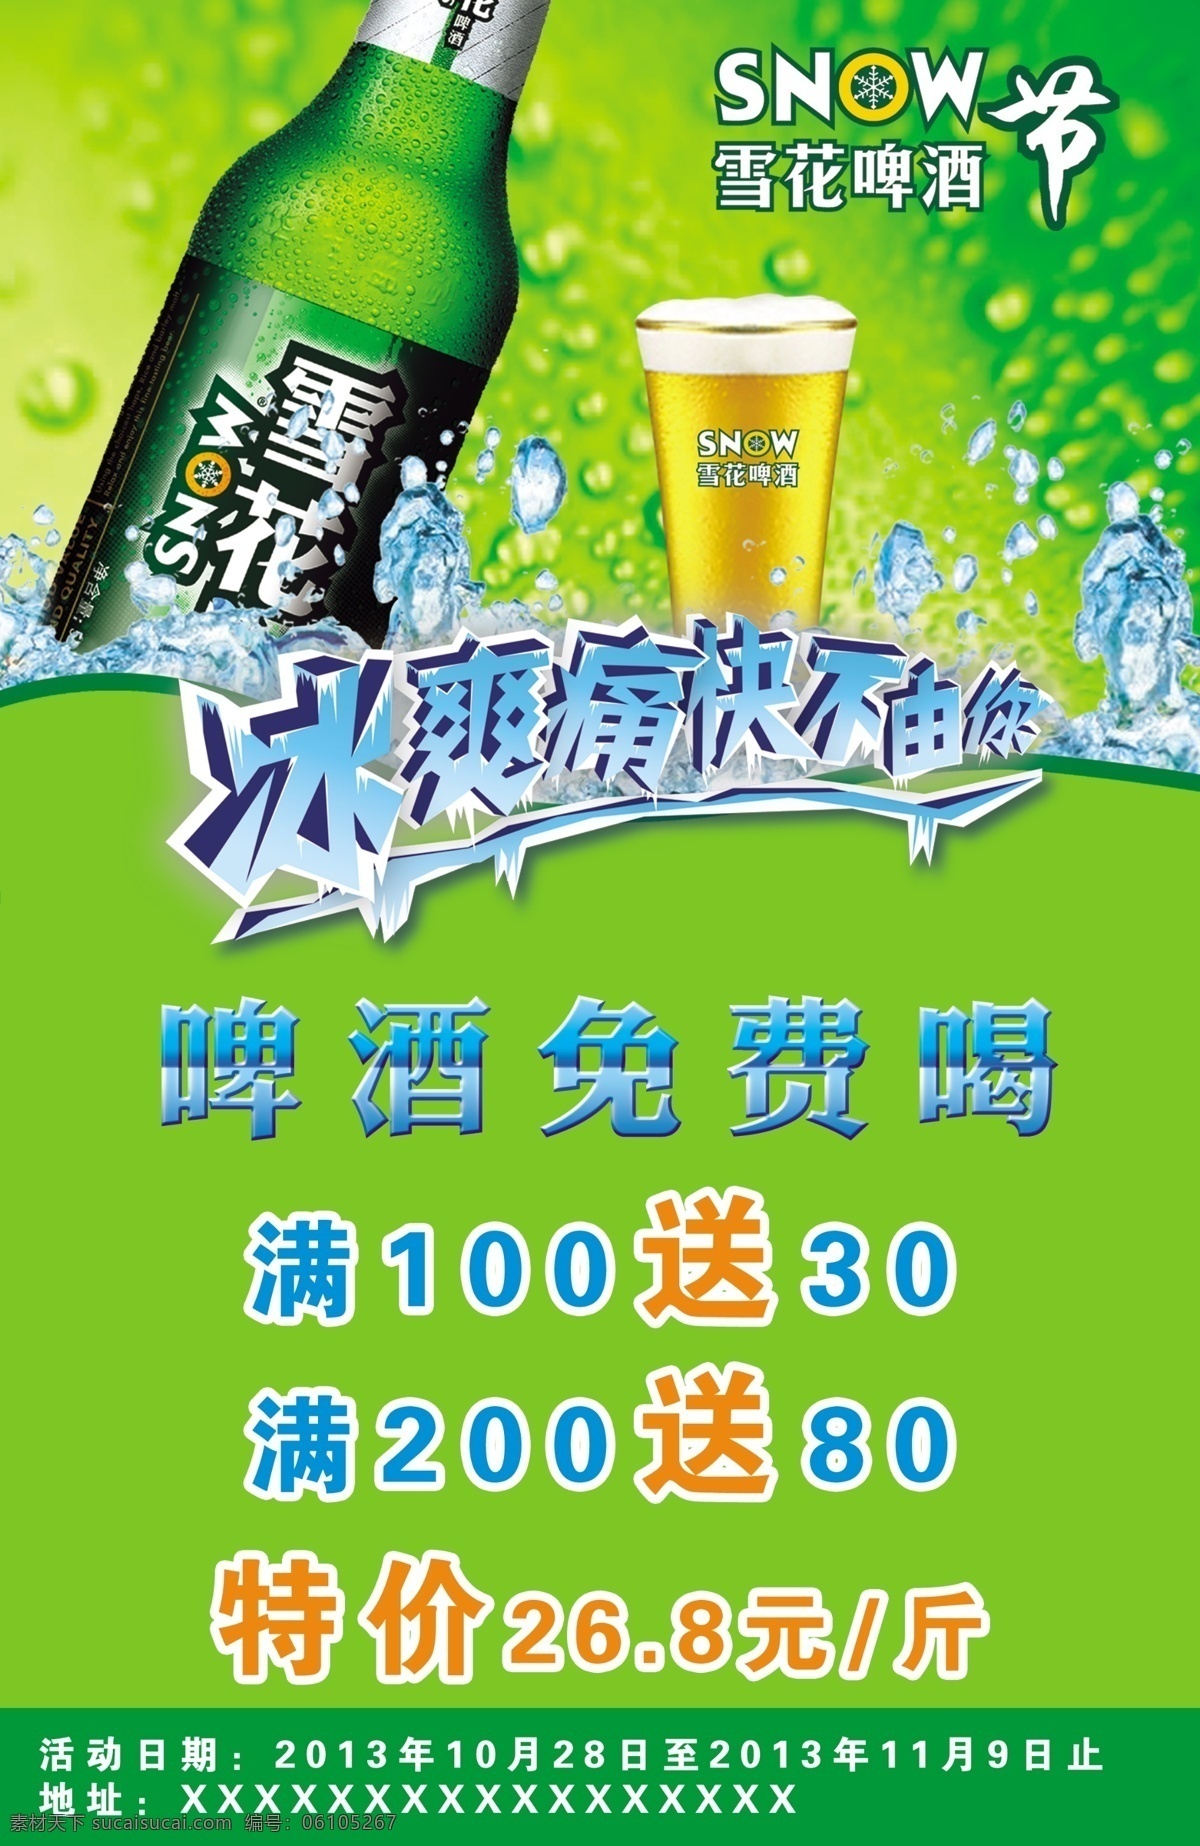 啤酒活动 模版下载 啤酒免费唱 雪花啤酒 啤酒特价 活动 雪花 雪花logo 商标 广告设计模板 源文件